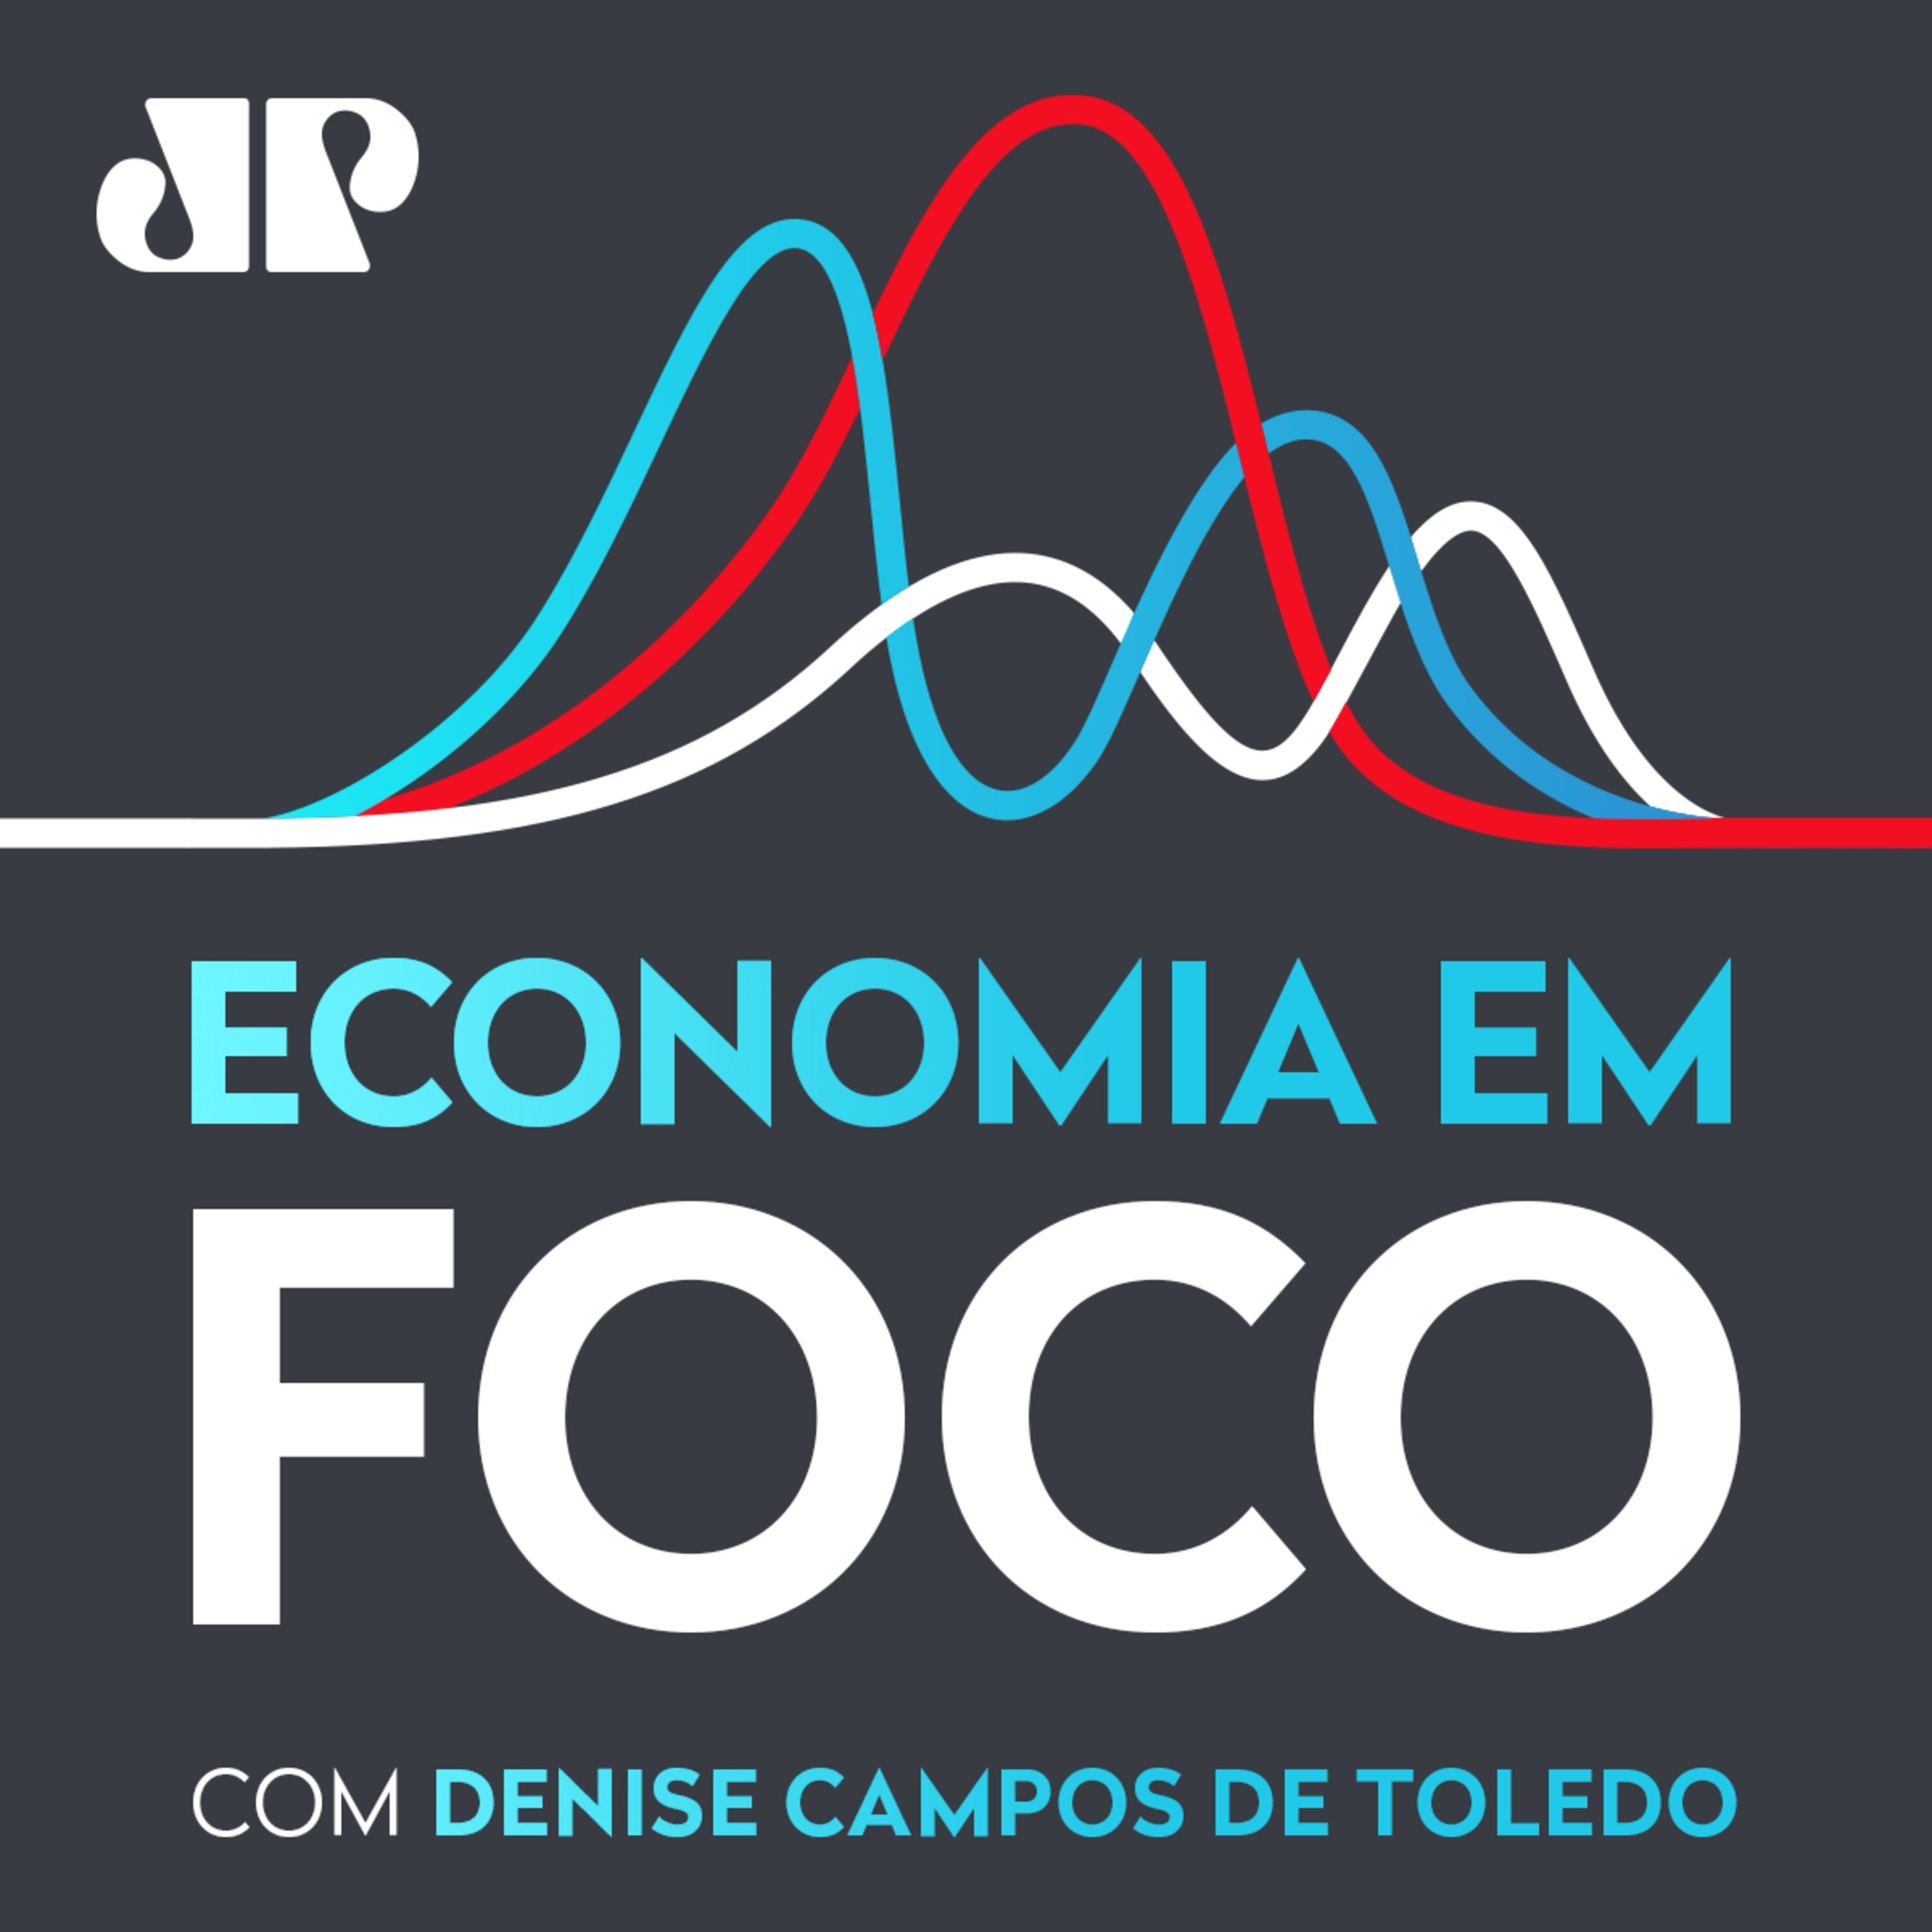 Economia em Foco - Economia brasileira, riscos e desafios